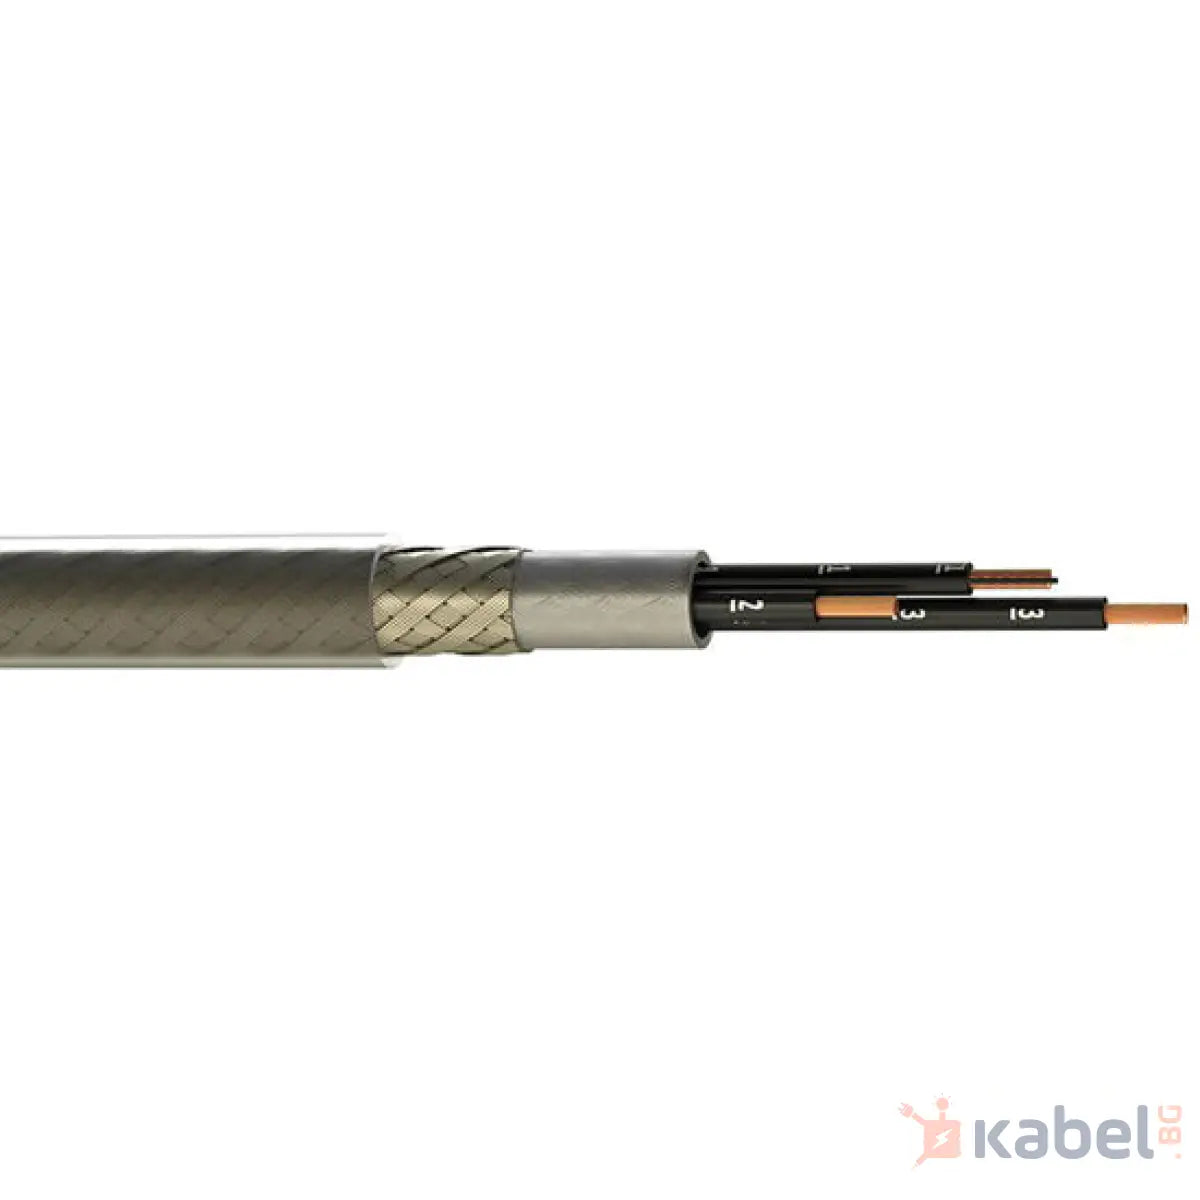 КАБЕЛ GAMAFLEX 10-JZ CY 4Х1.50 Б 300/500V